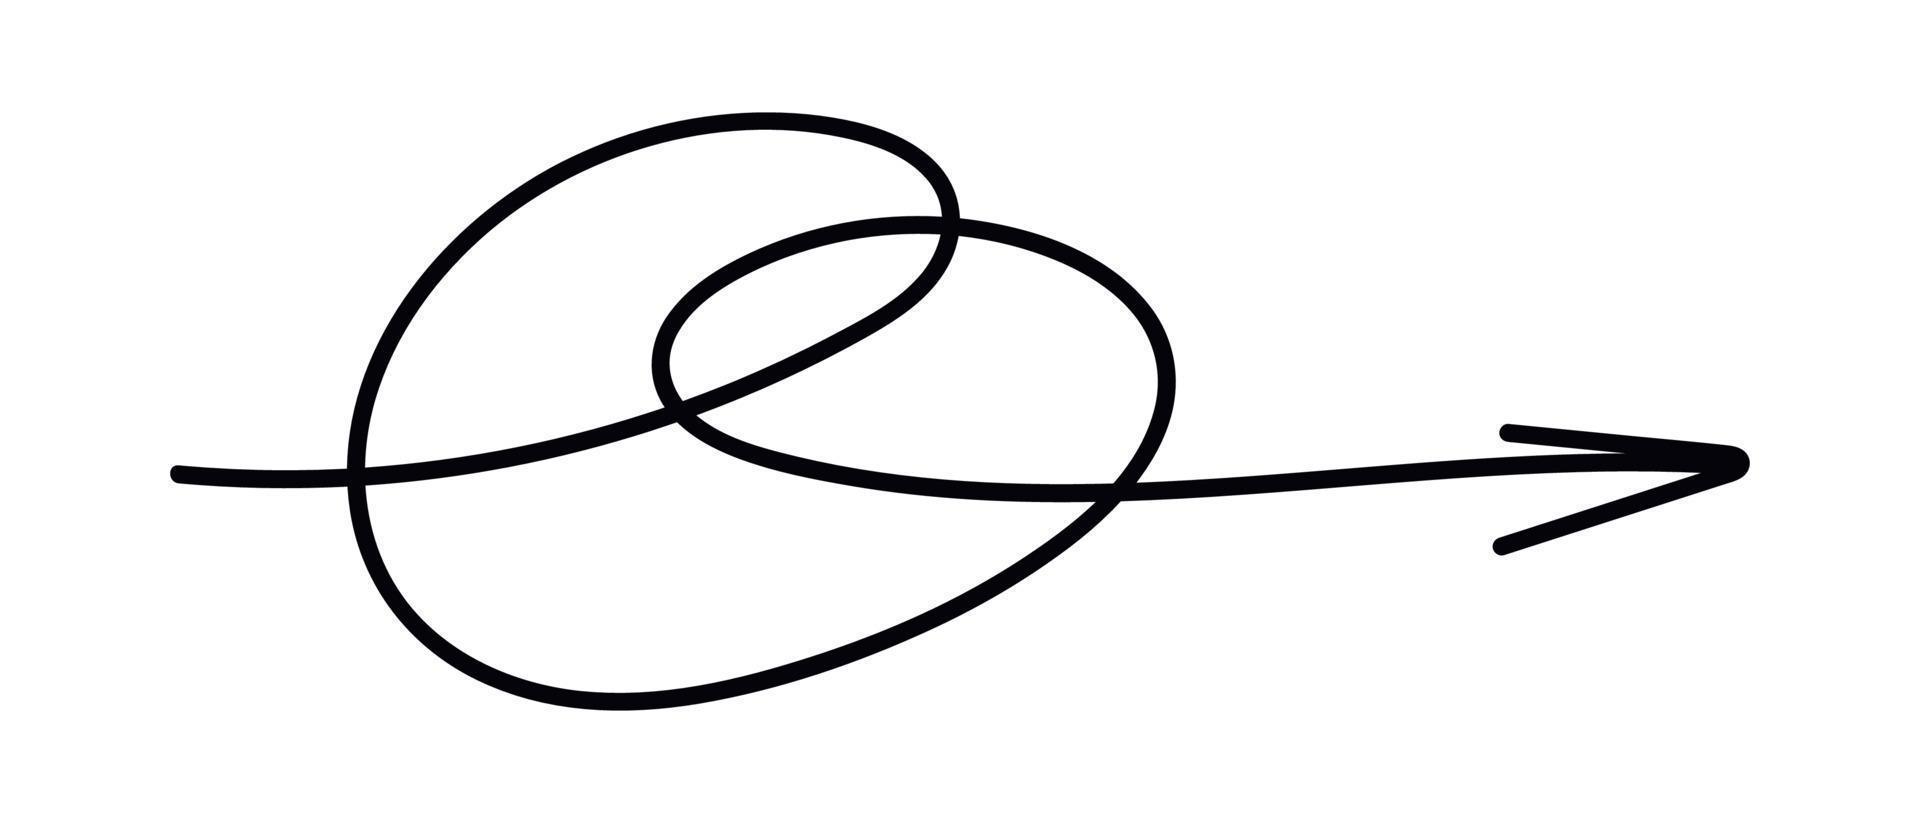 tekening lijn pijl. hand- getrokken kattebelletje spiraal pijl. vector geïsoleerd illustratie